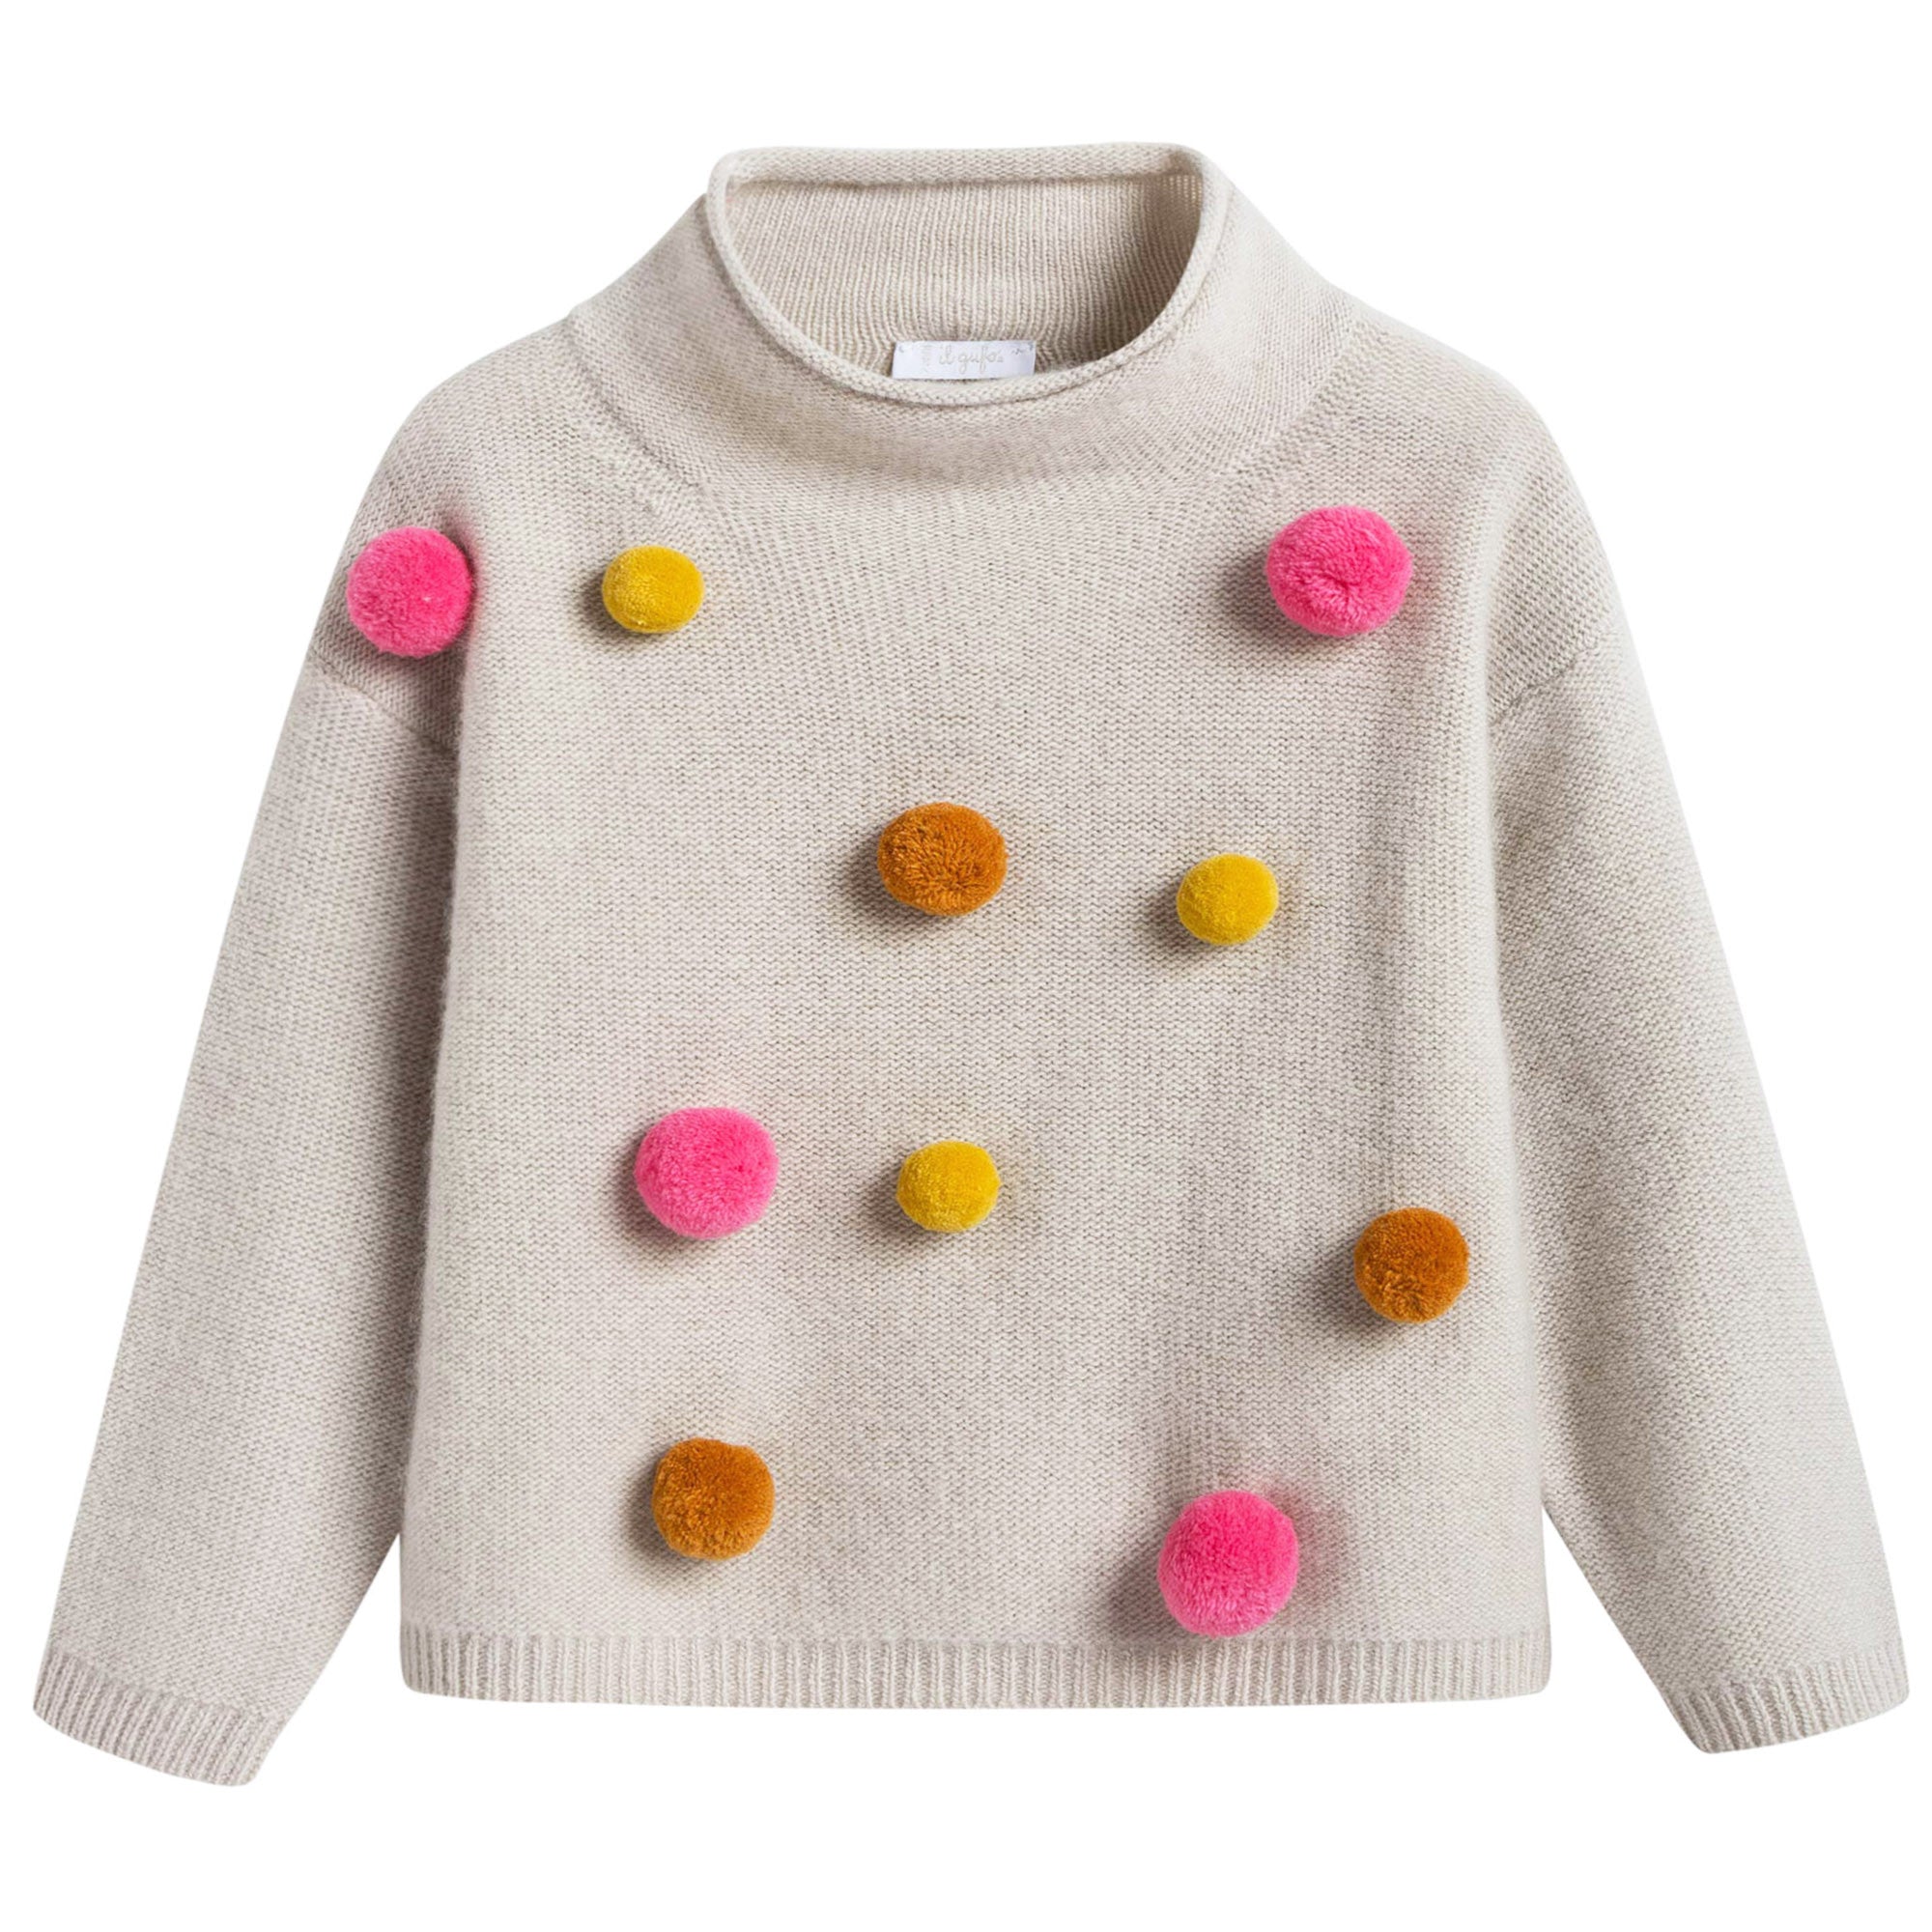 Girls Beige Wool Sweater With Pom-Pom Trims